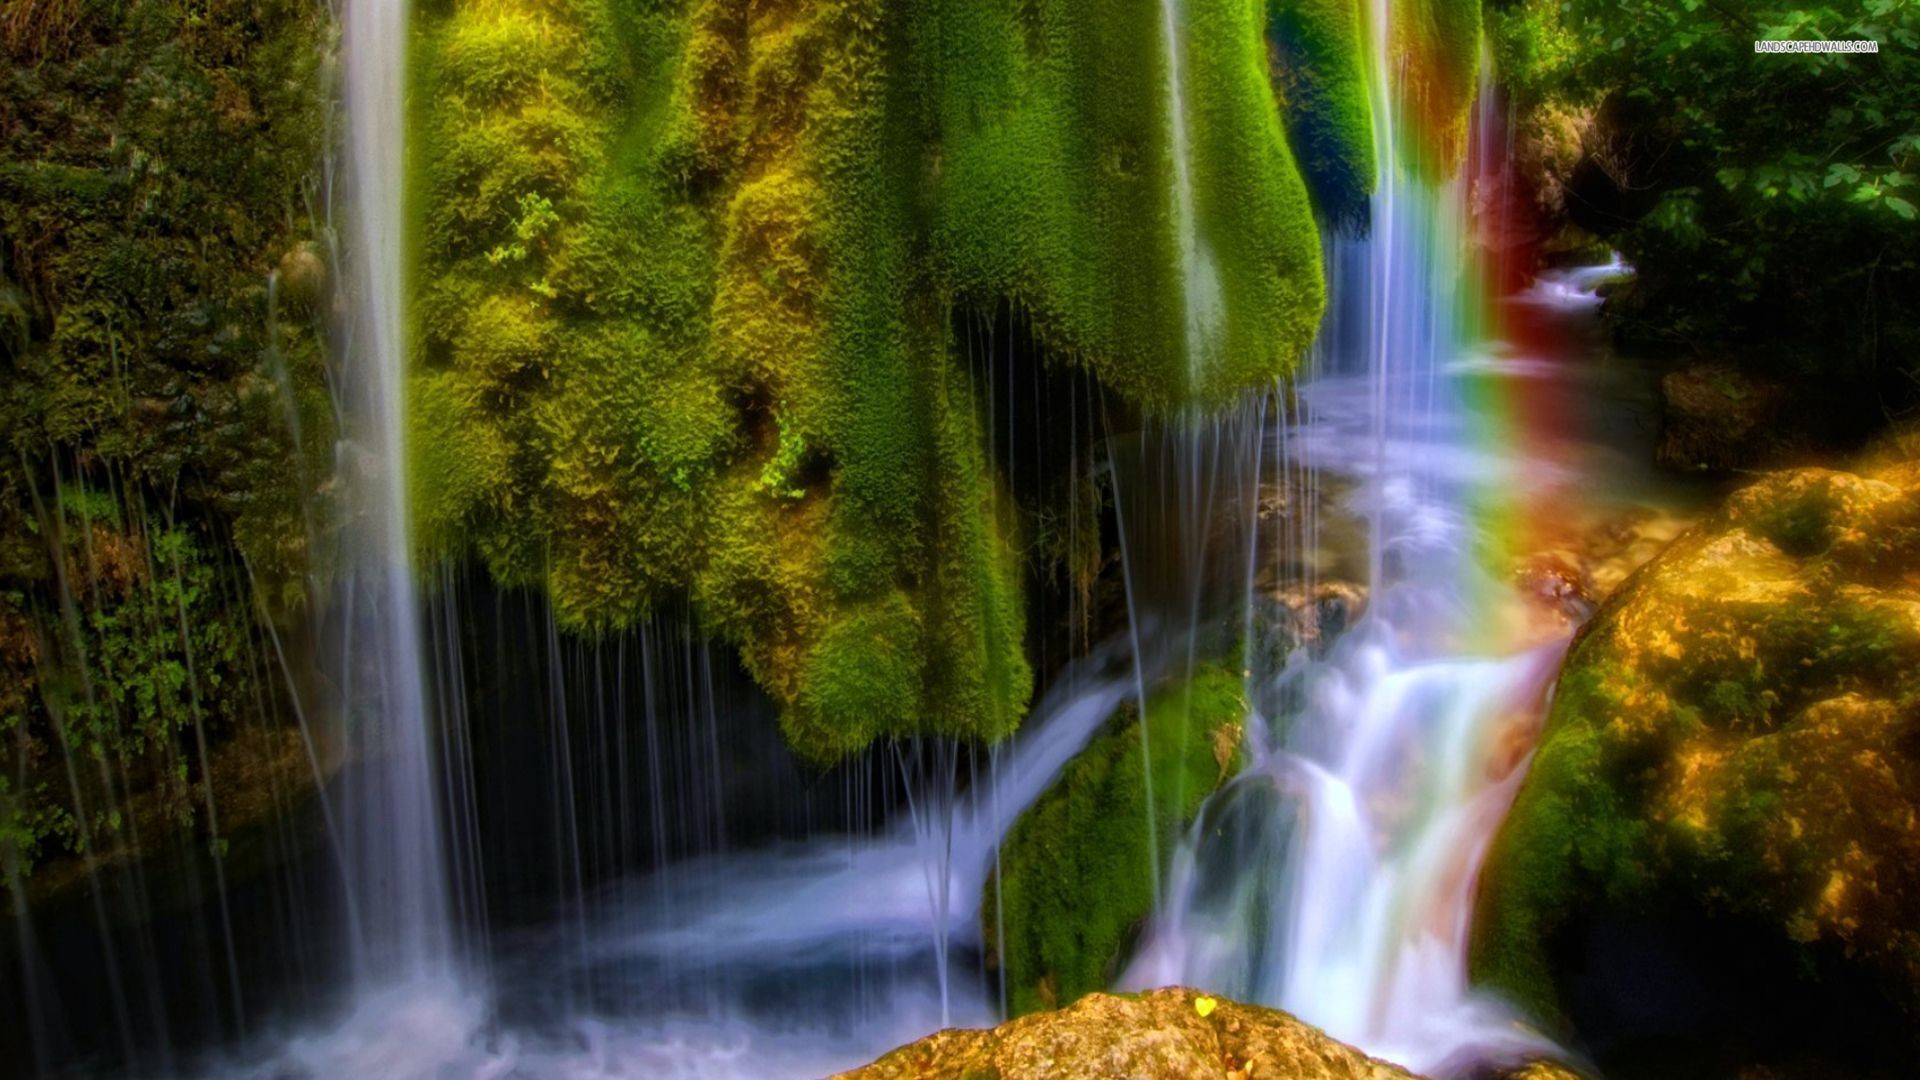 Движущиеся обои на заставку. Красивые водопады. Сказочный водопад. Живая природа водопады. Обои для рабочего стола водопады живые.